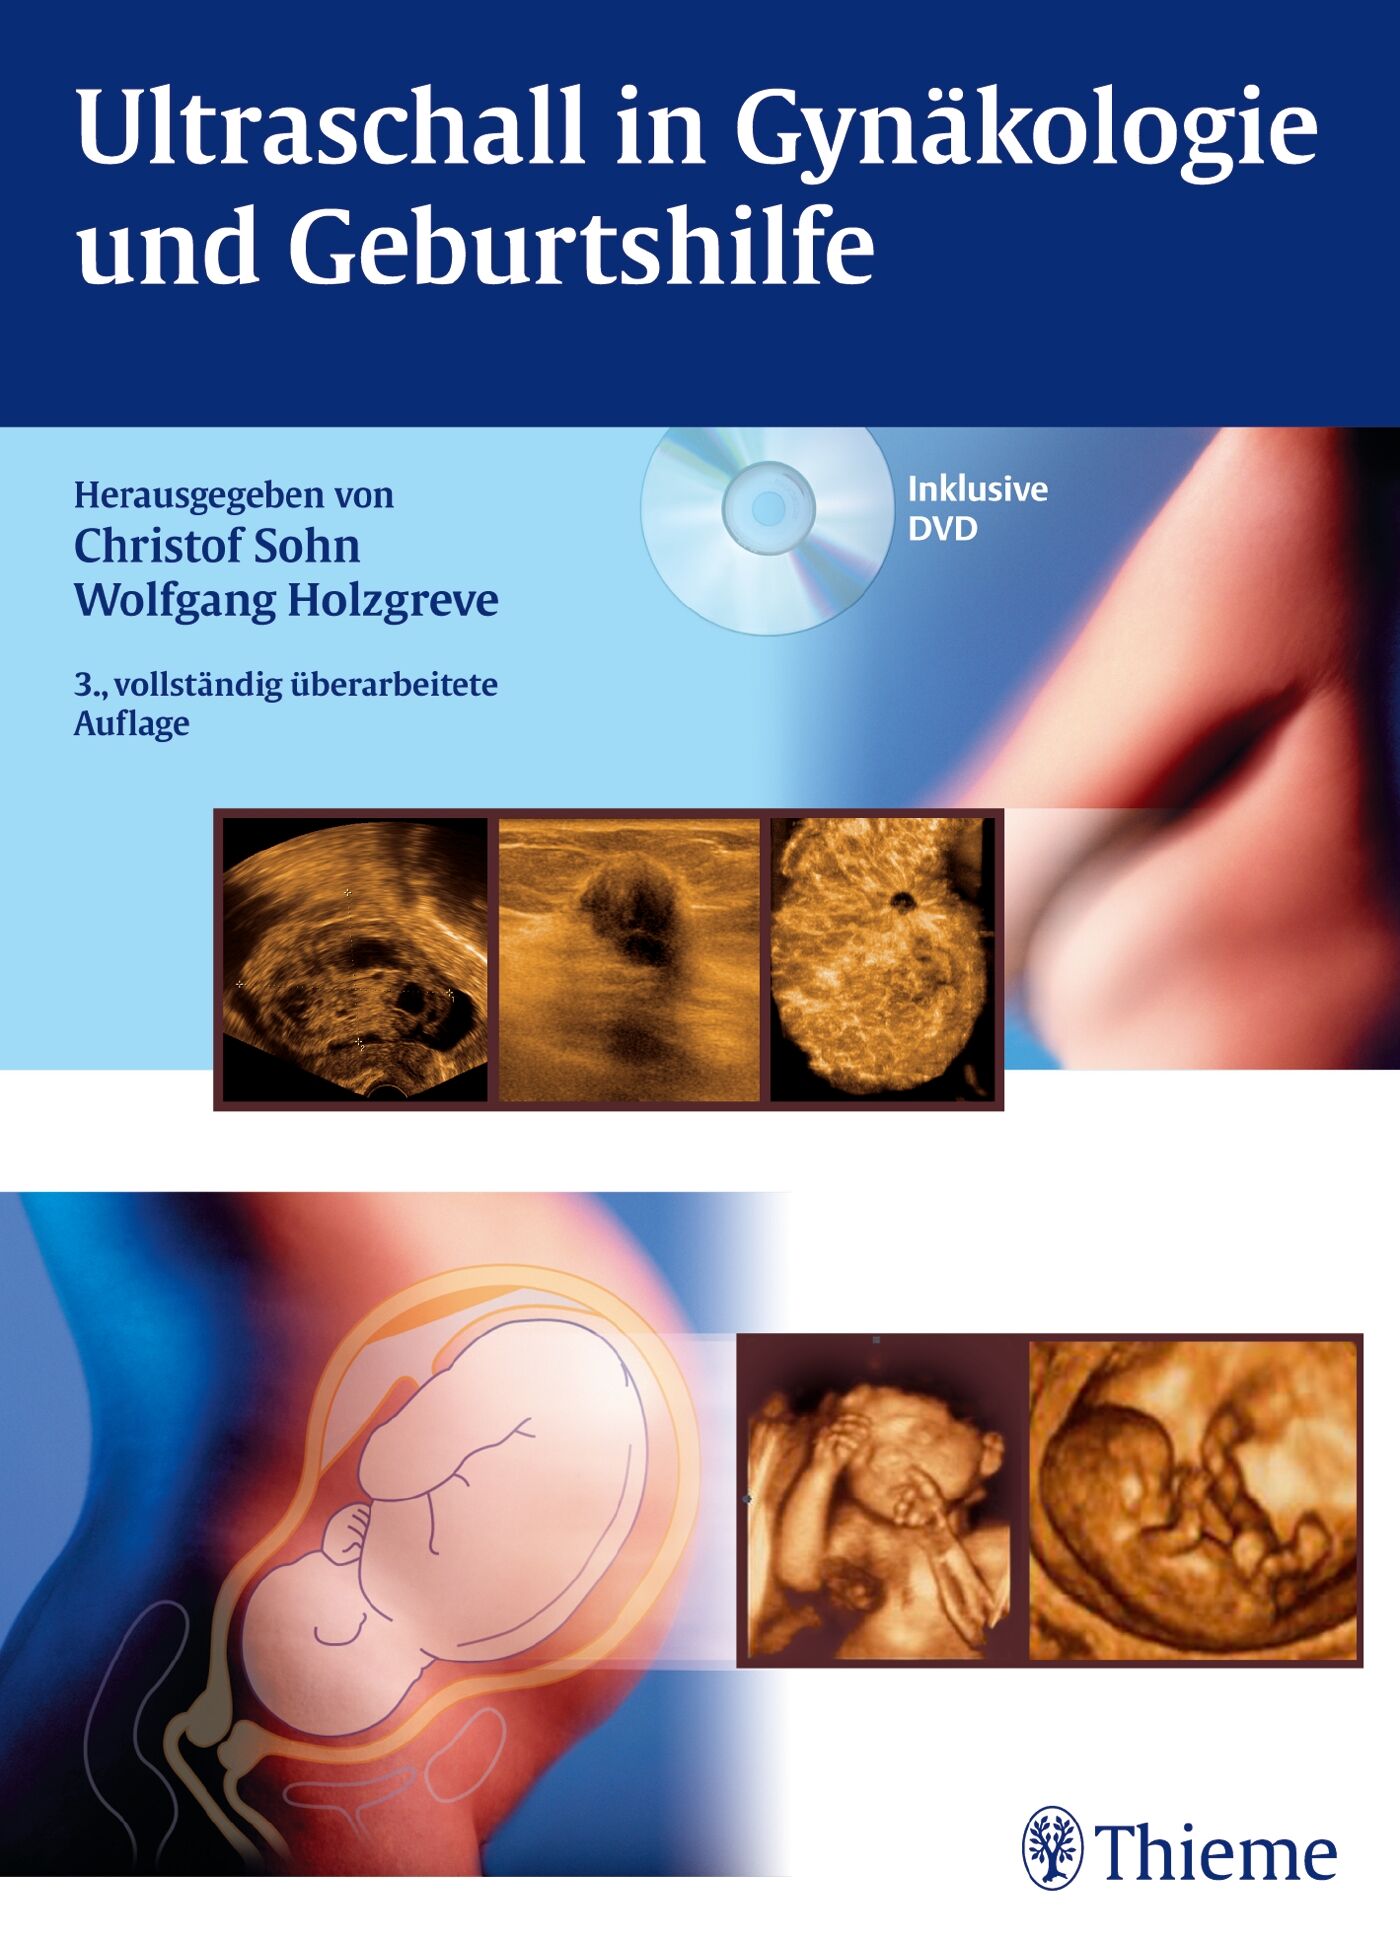 Ultraschall in Gynäkologie und Geburtshilfe, 9783131586339